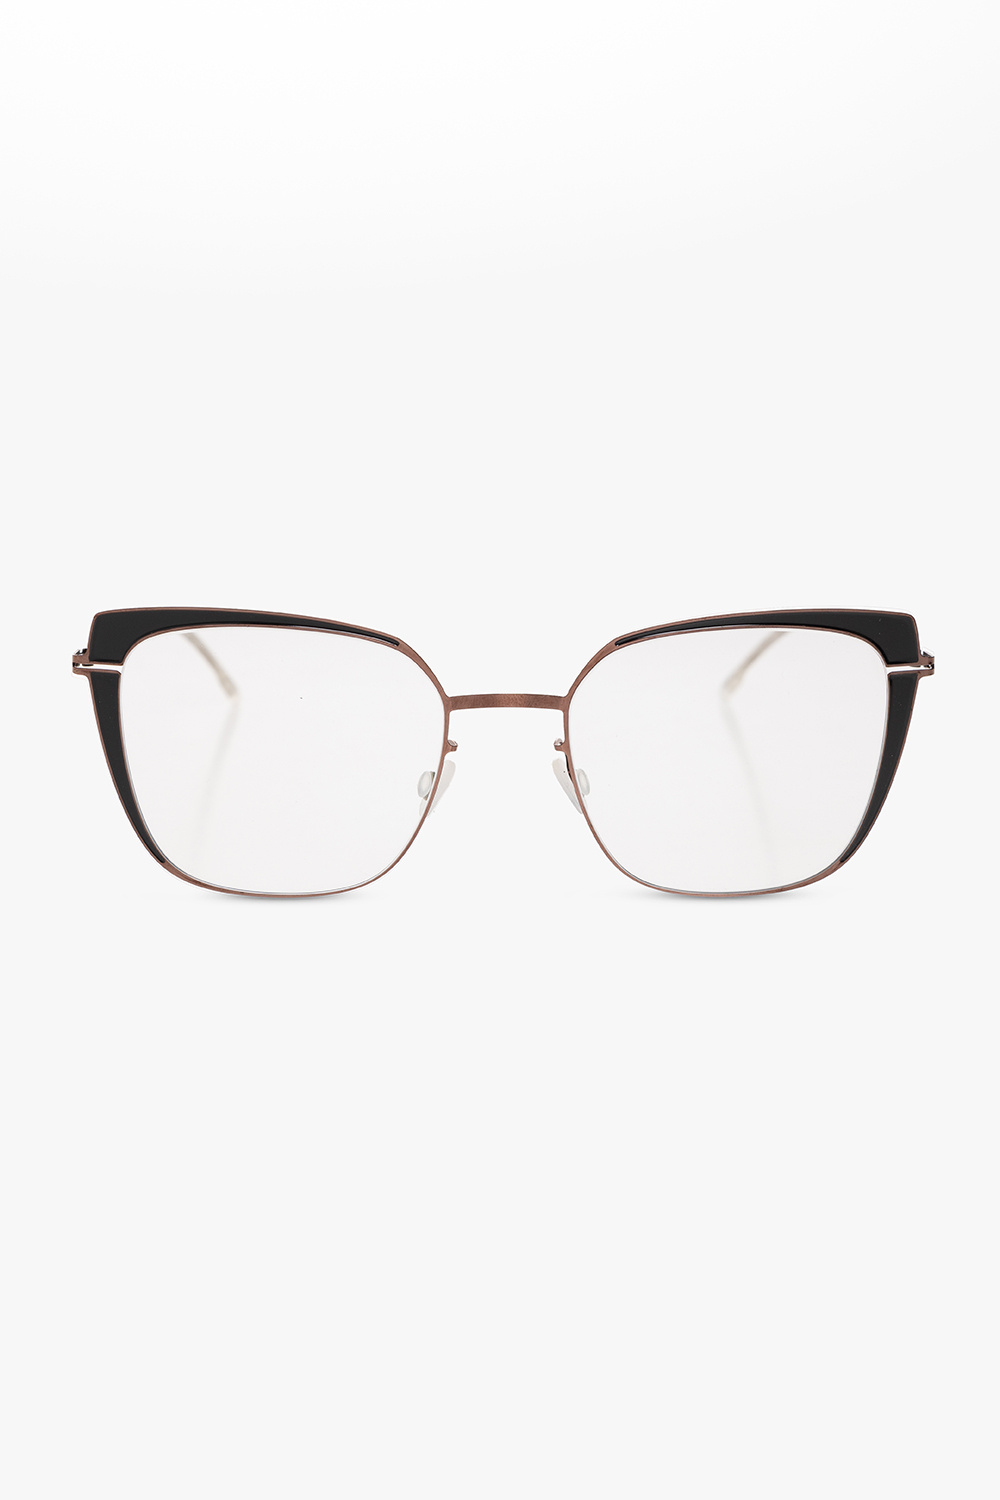 Mykita ‘Viola’ optical glasses